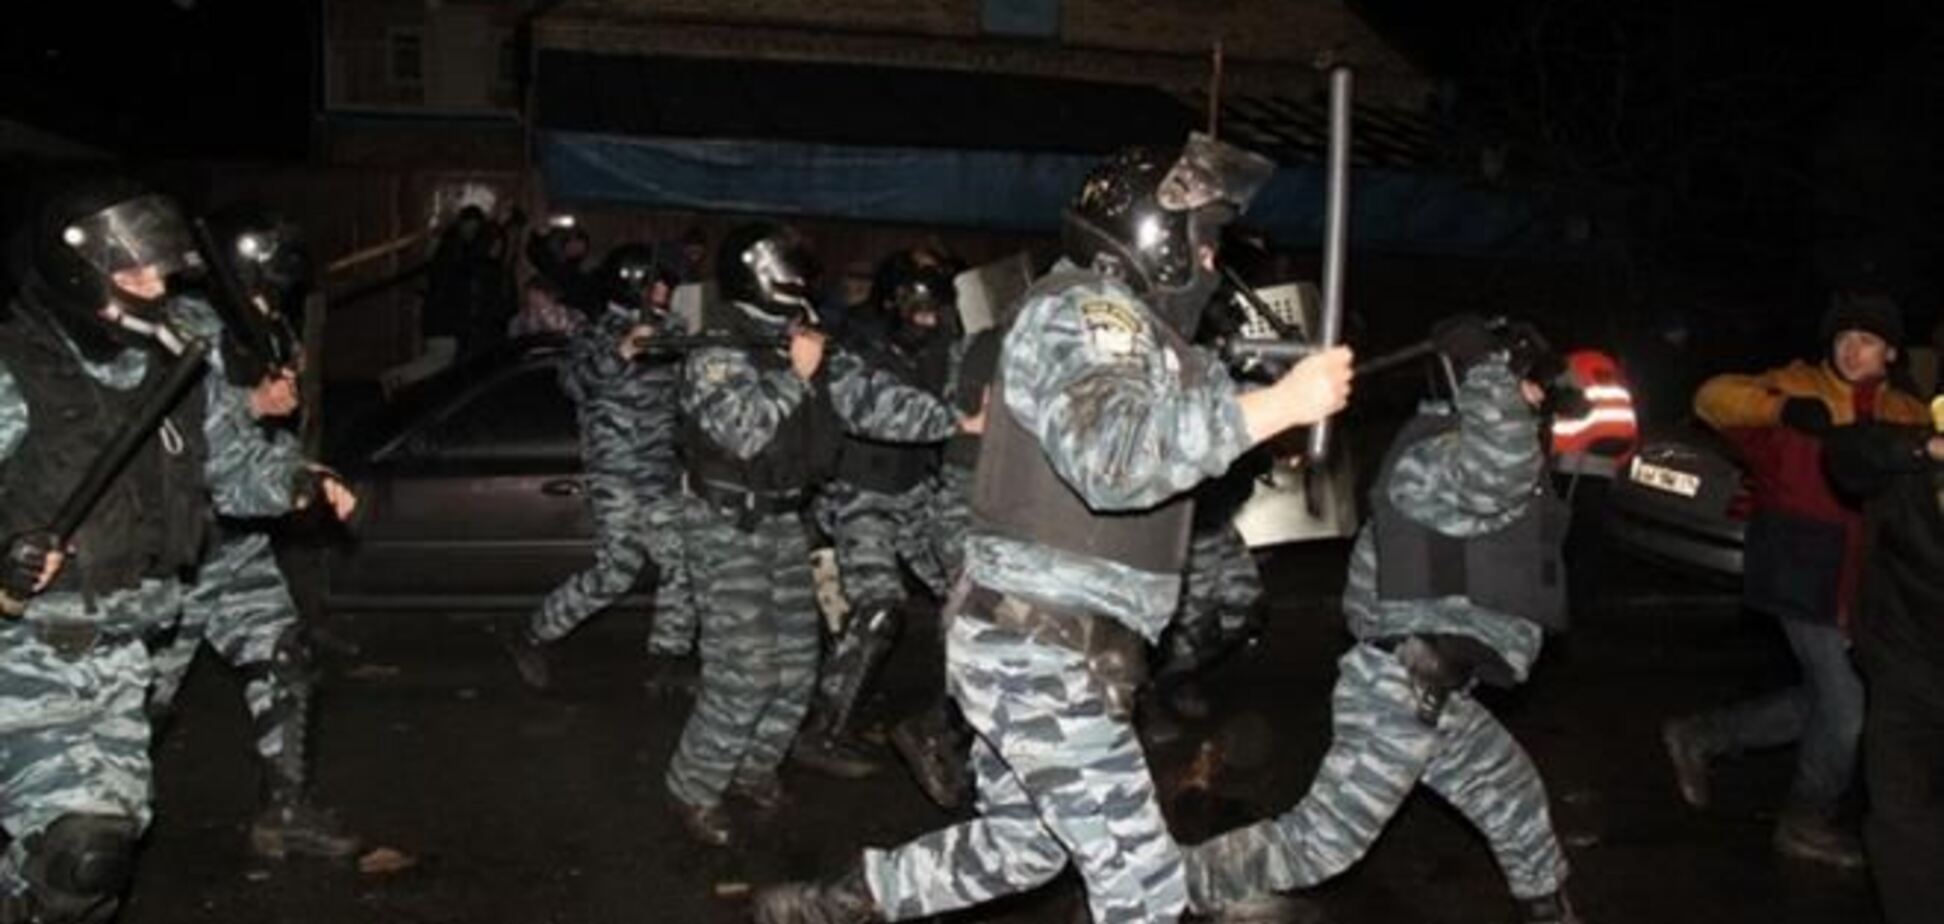 Бійка на проспекті Перемоги: фотохроніка подій